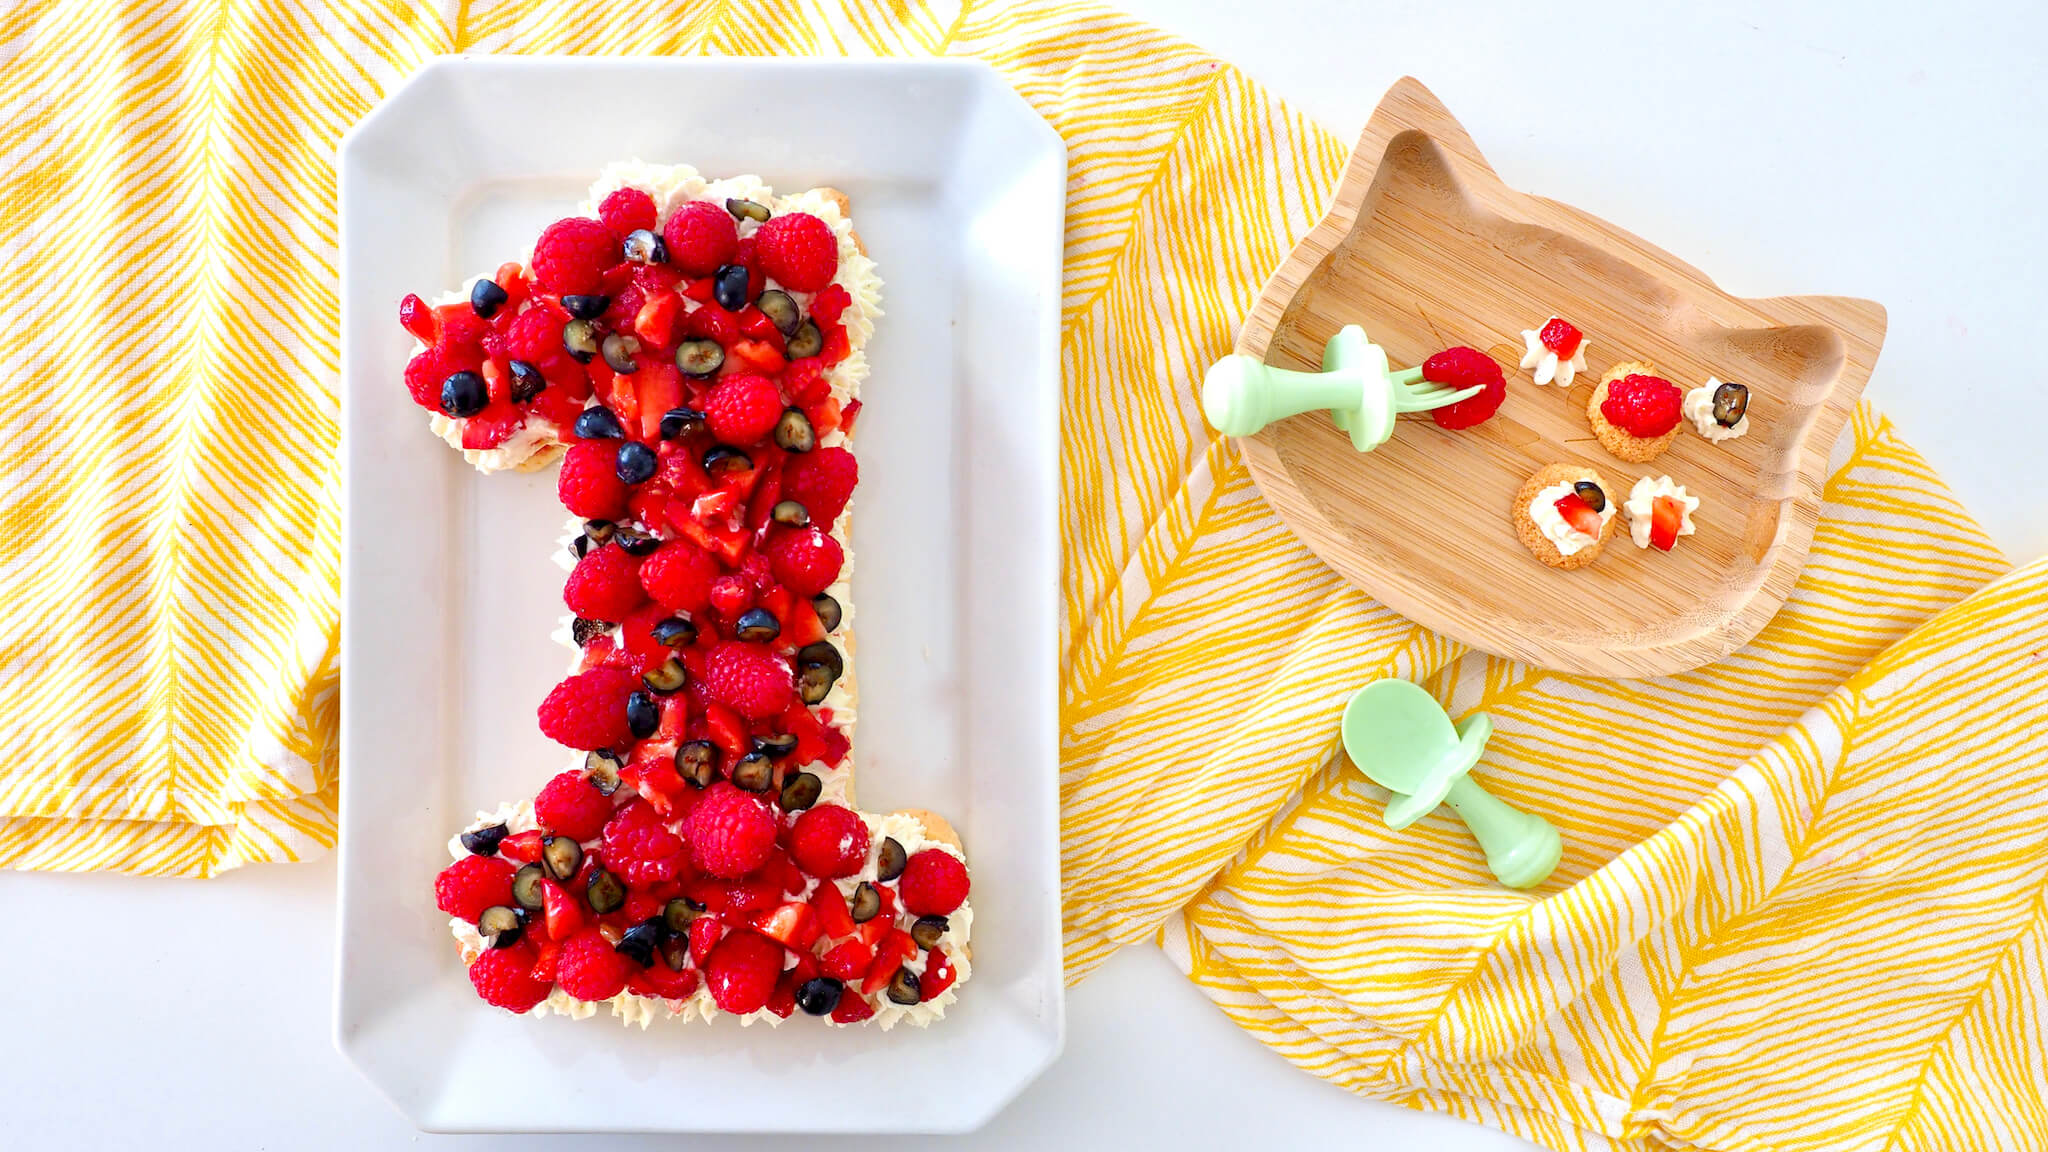 Faire un gâteau original pour un anniversaire d'enfant - Marie Claire